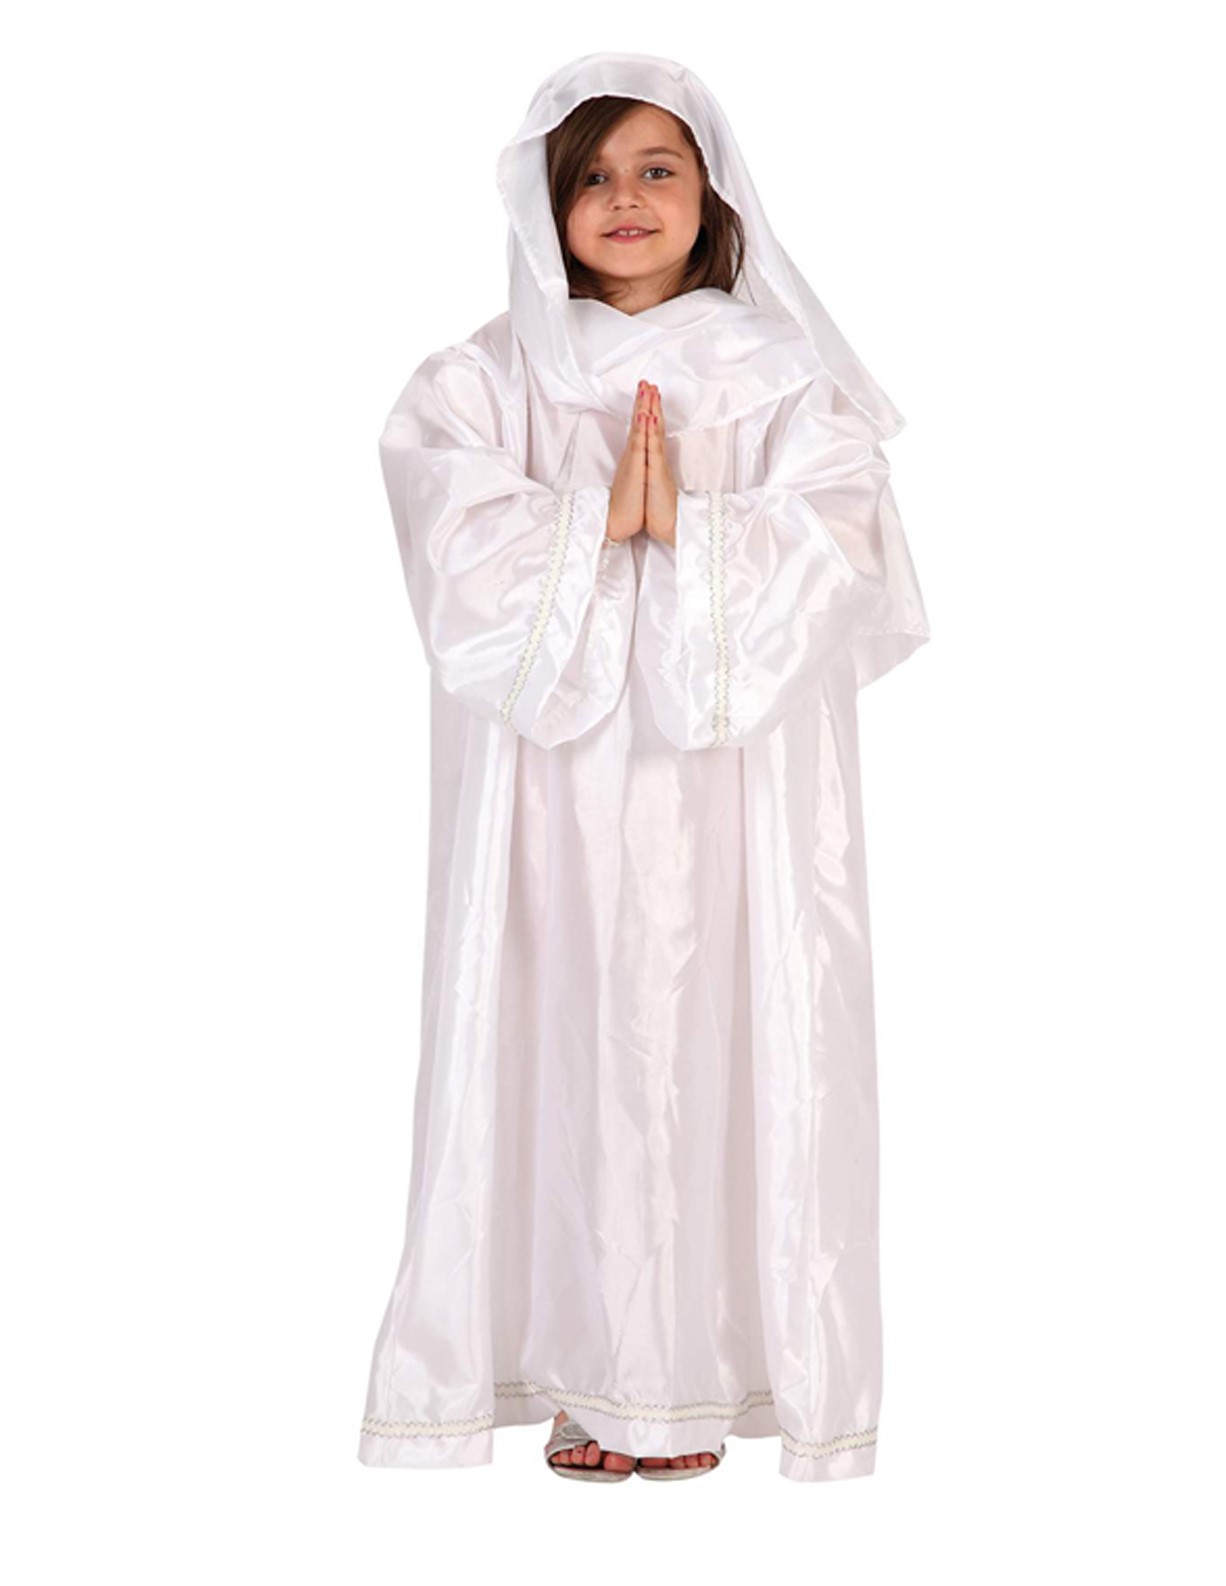 Disfraz de Virgen María para niñas en Navidad